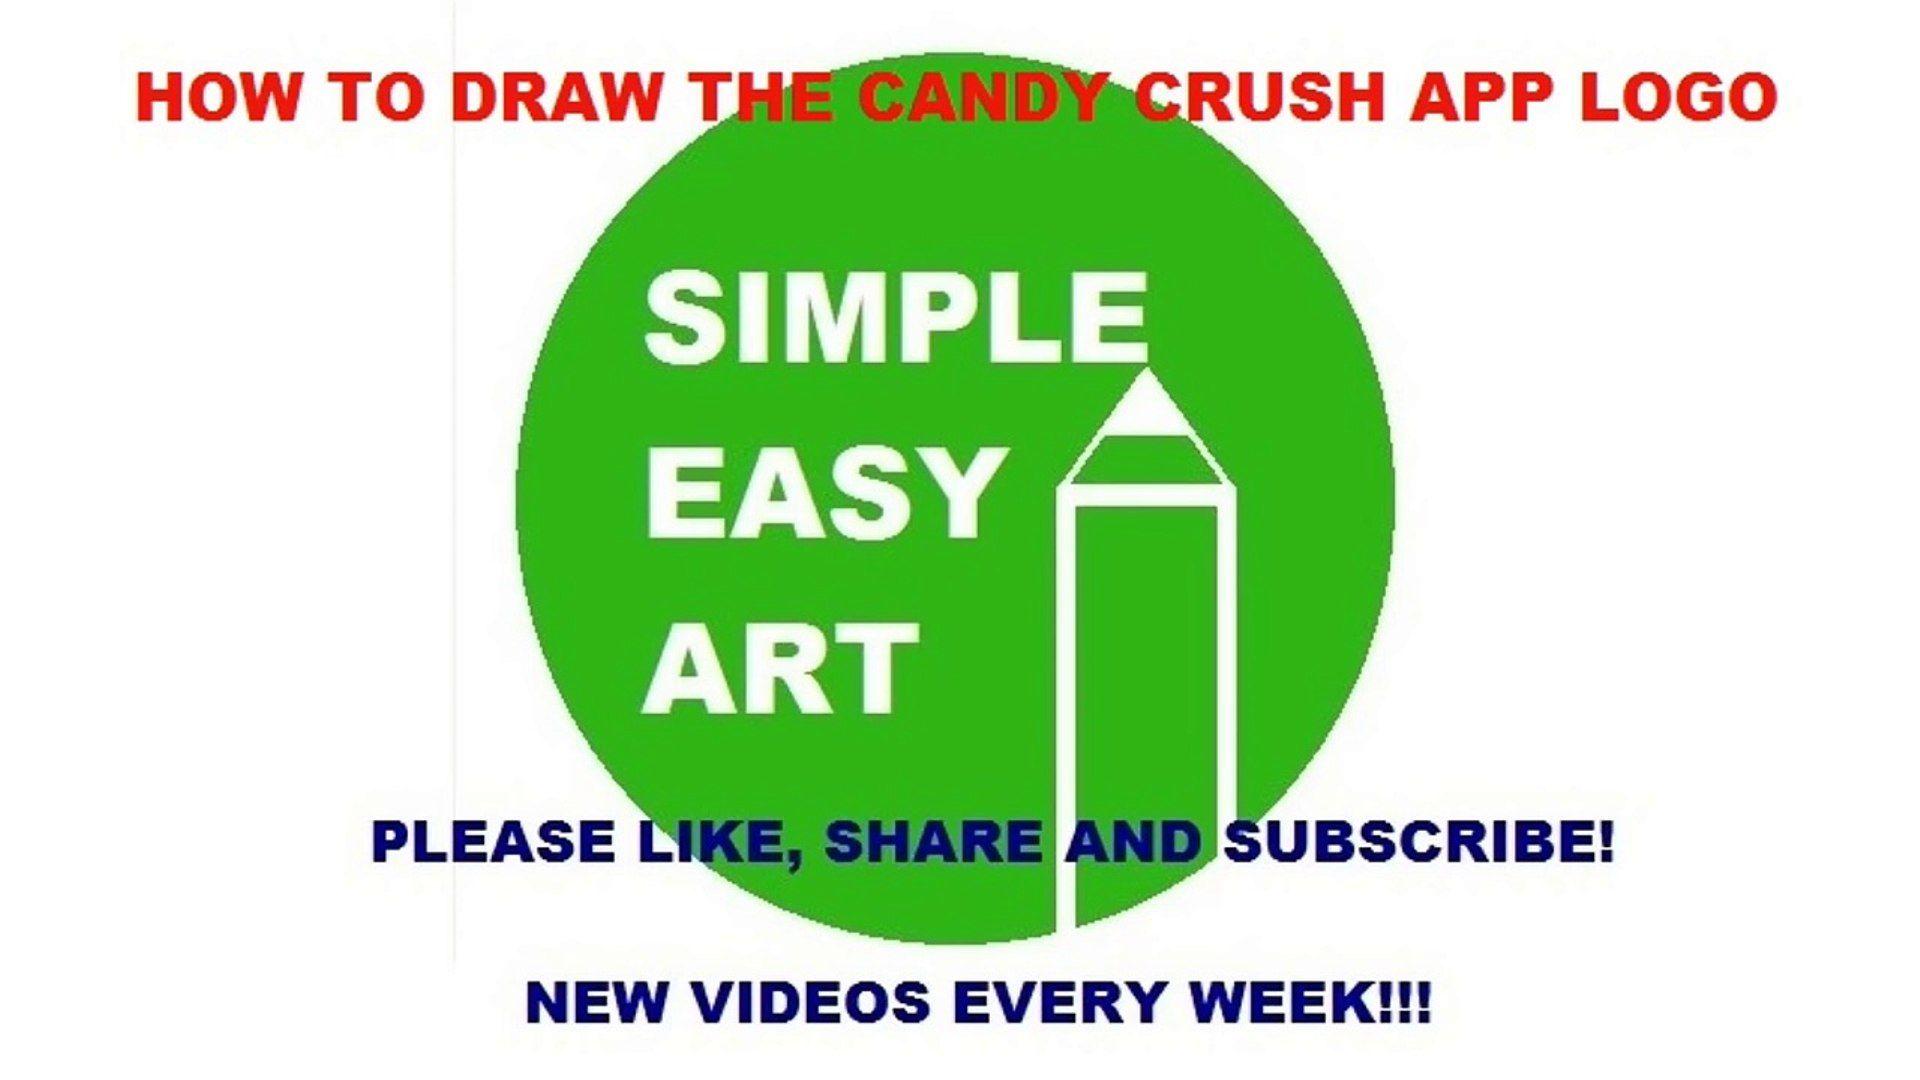 Candy Crush App Logo - Candy Crush App Logo